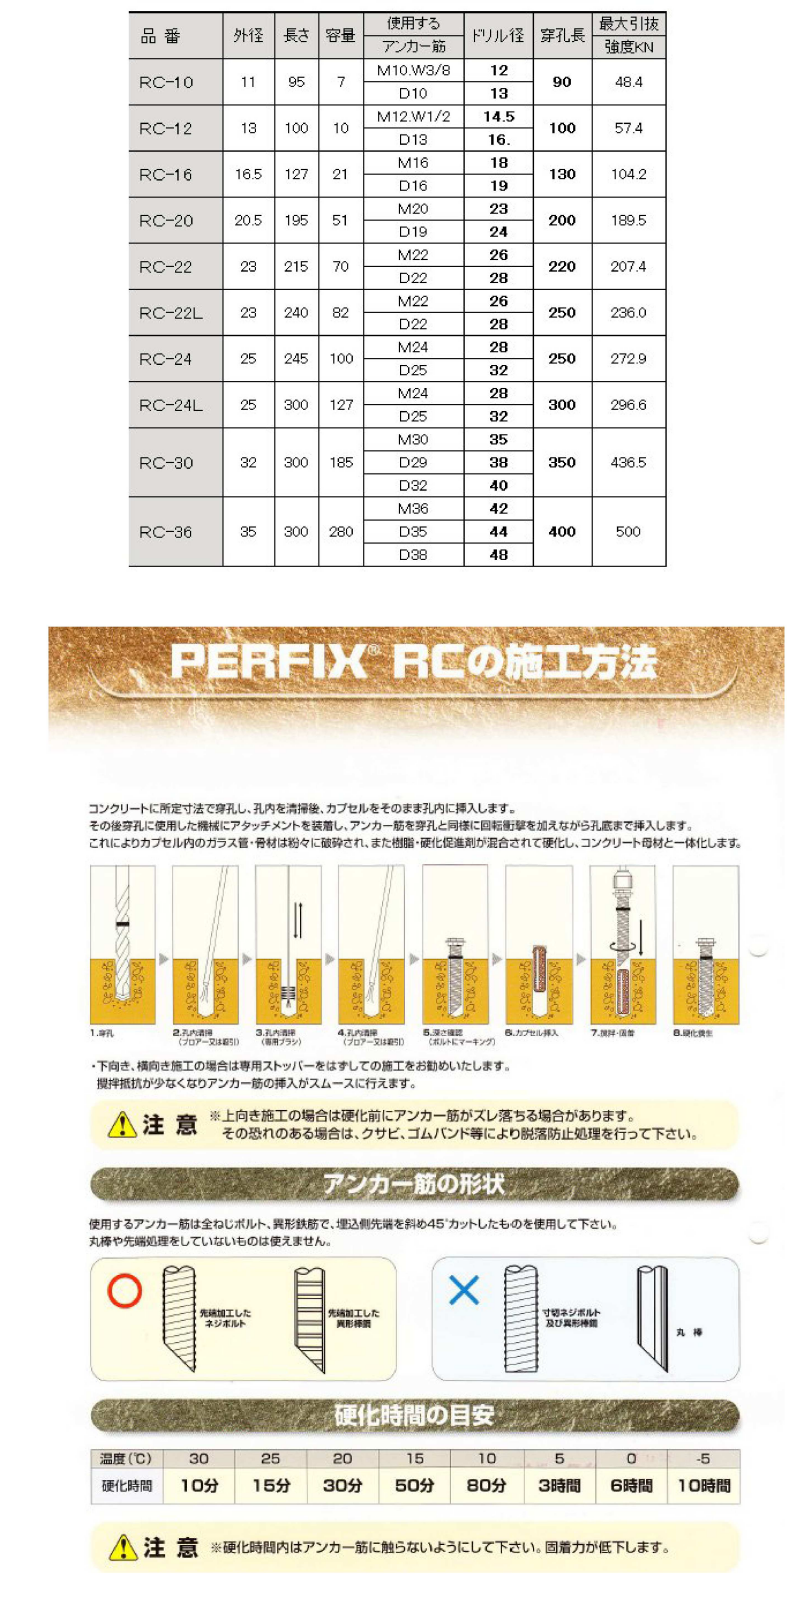 ケミカルアンカー パーフィックス レジンカプセルRC (撹拌タイプ) 製品規格